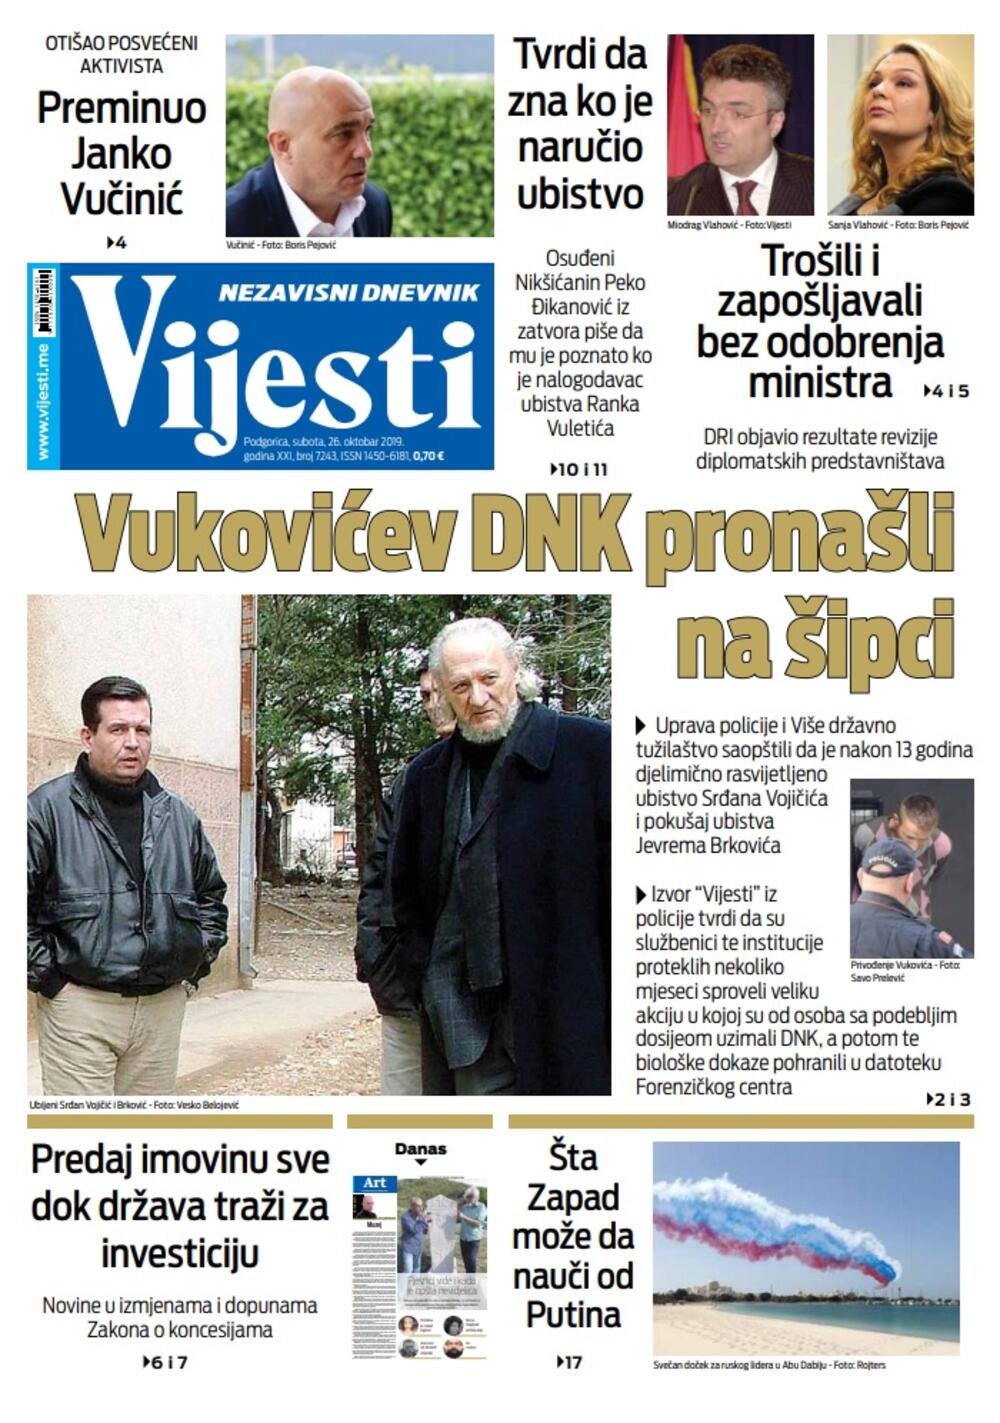 Naslovna strana "Vijesti" za 26. oktobar 2019.